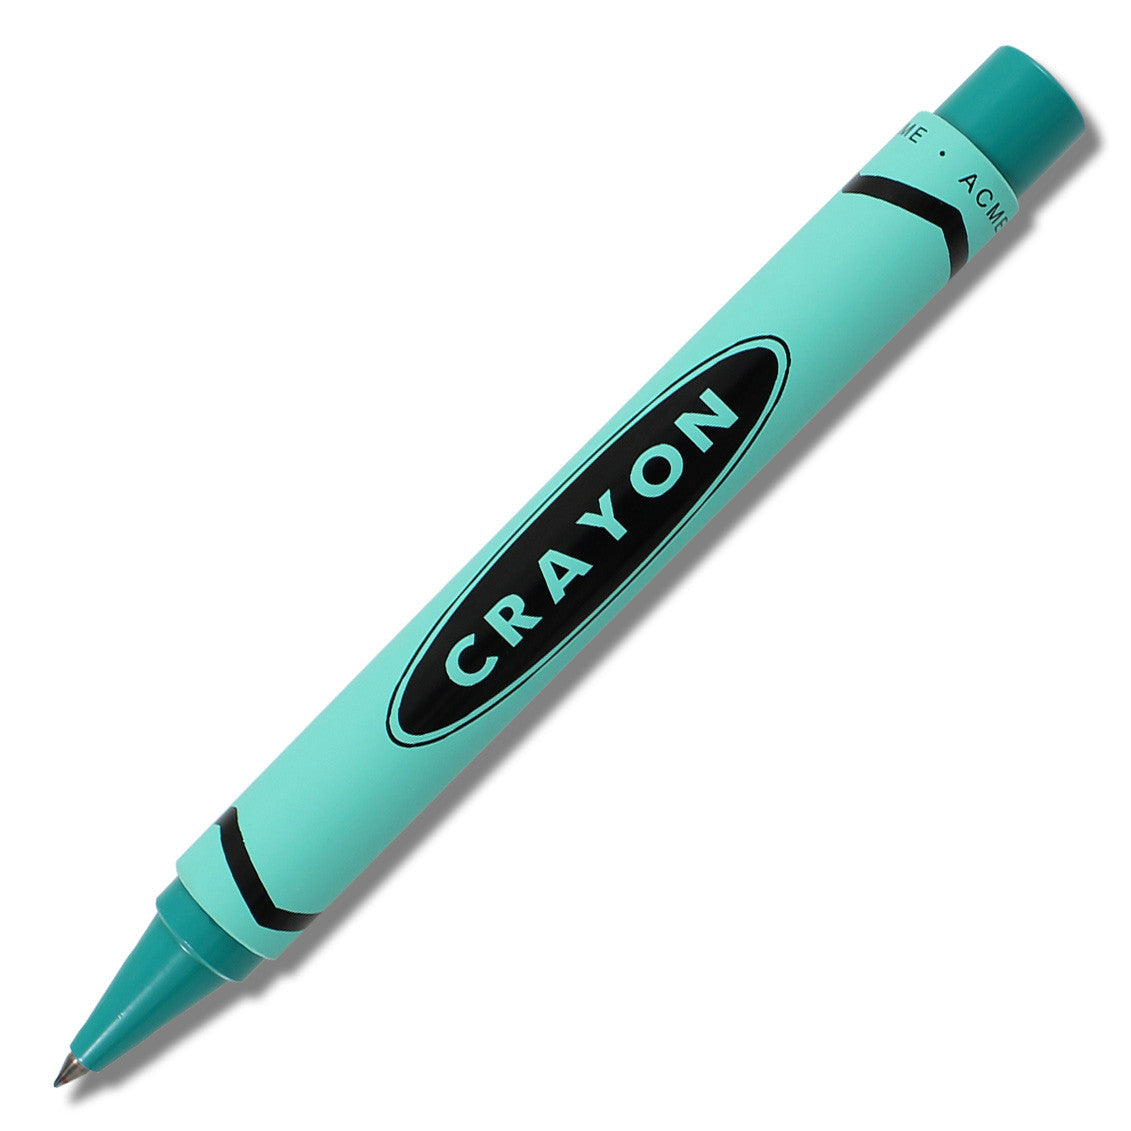 Crayon Roller Ball Pen